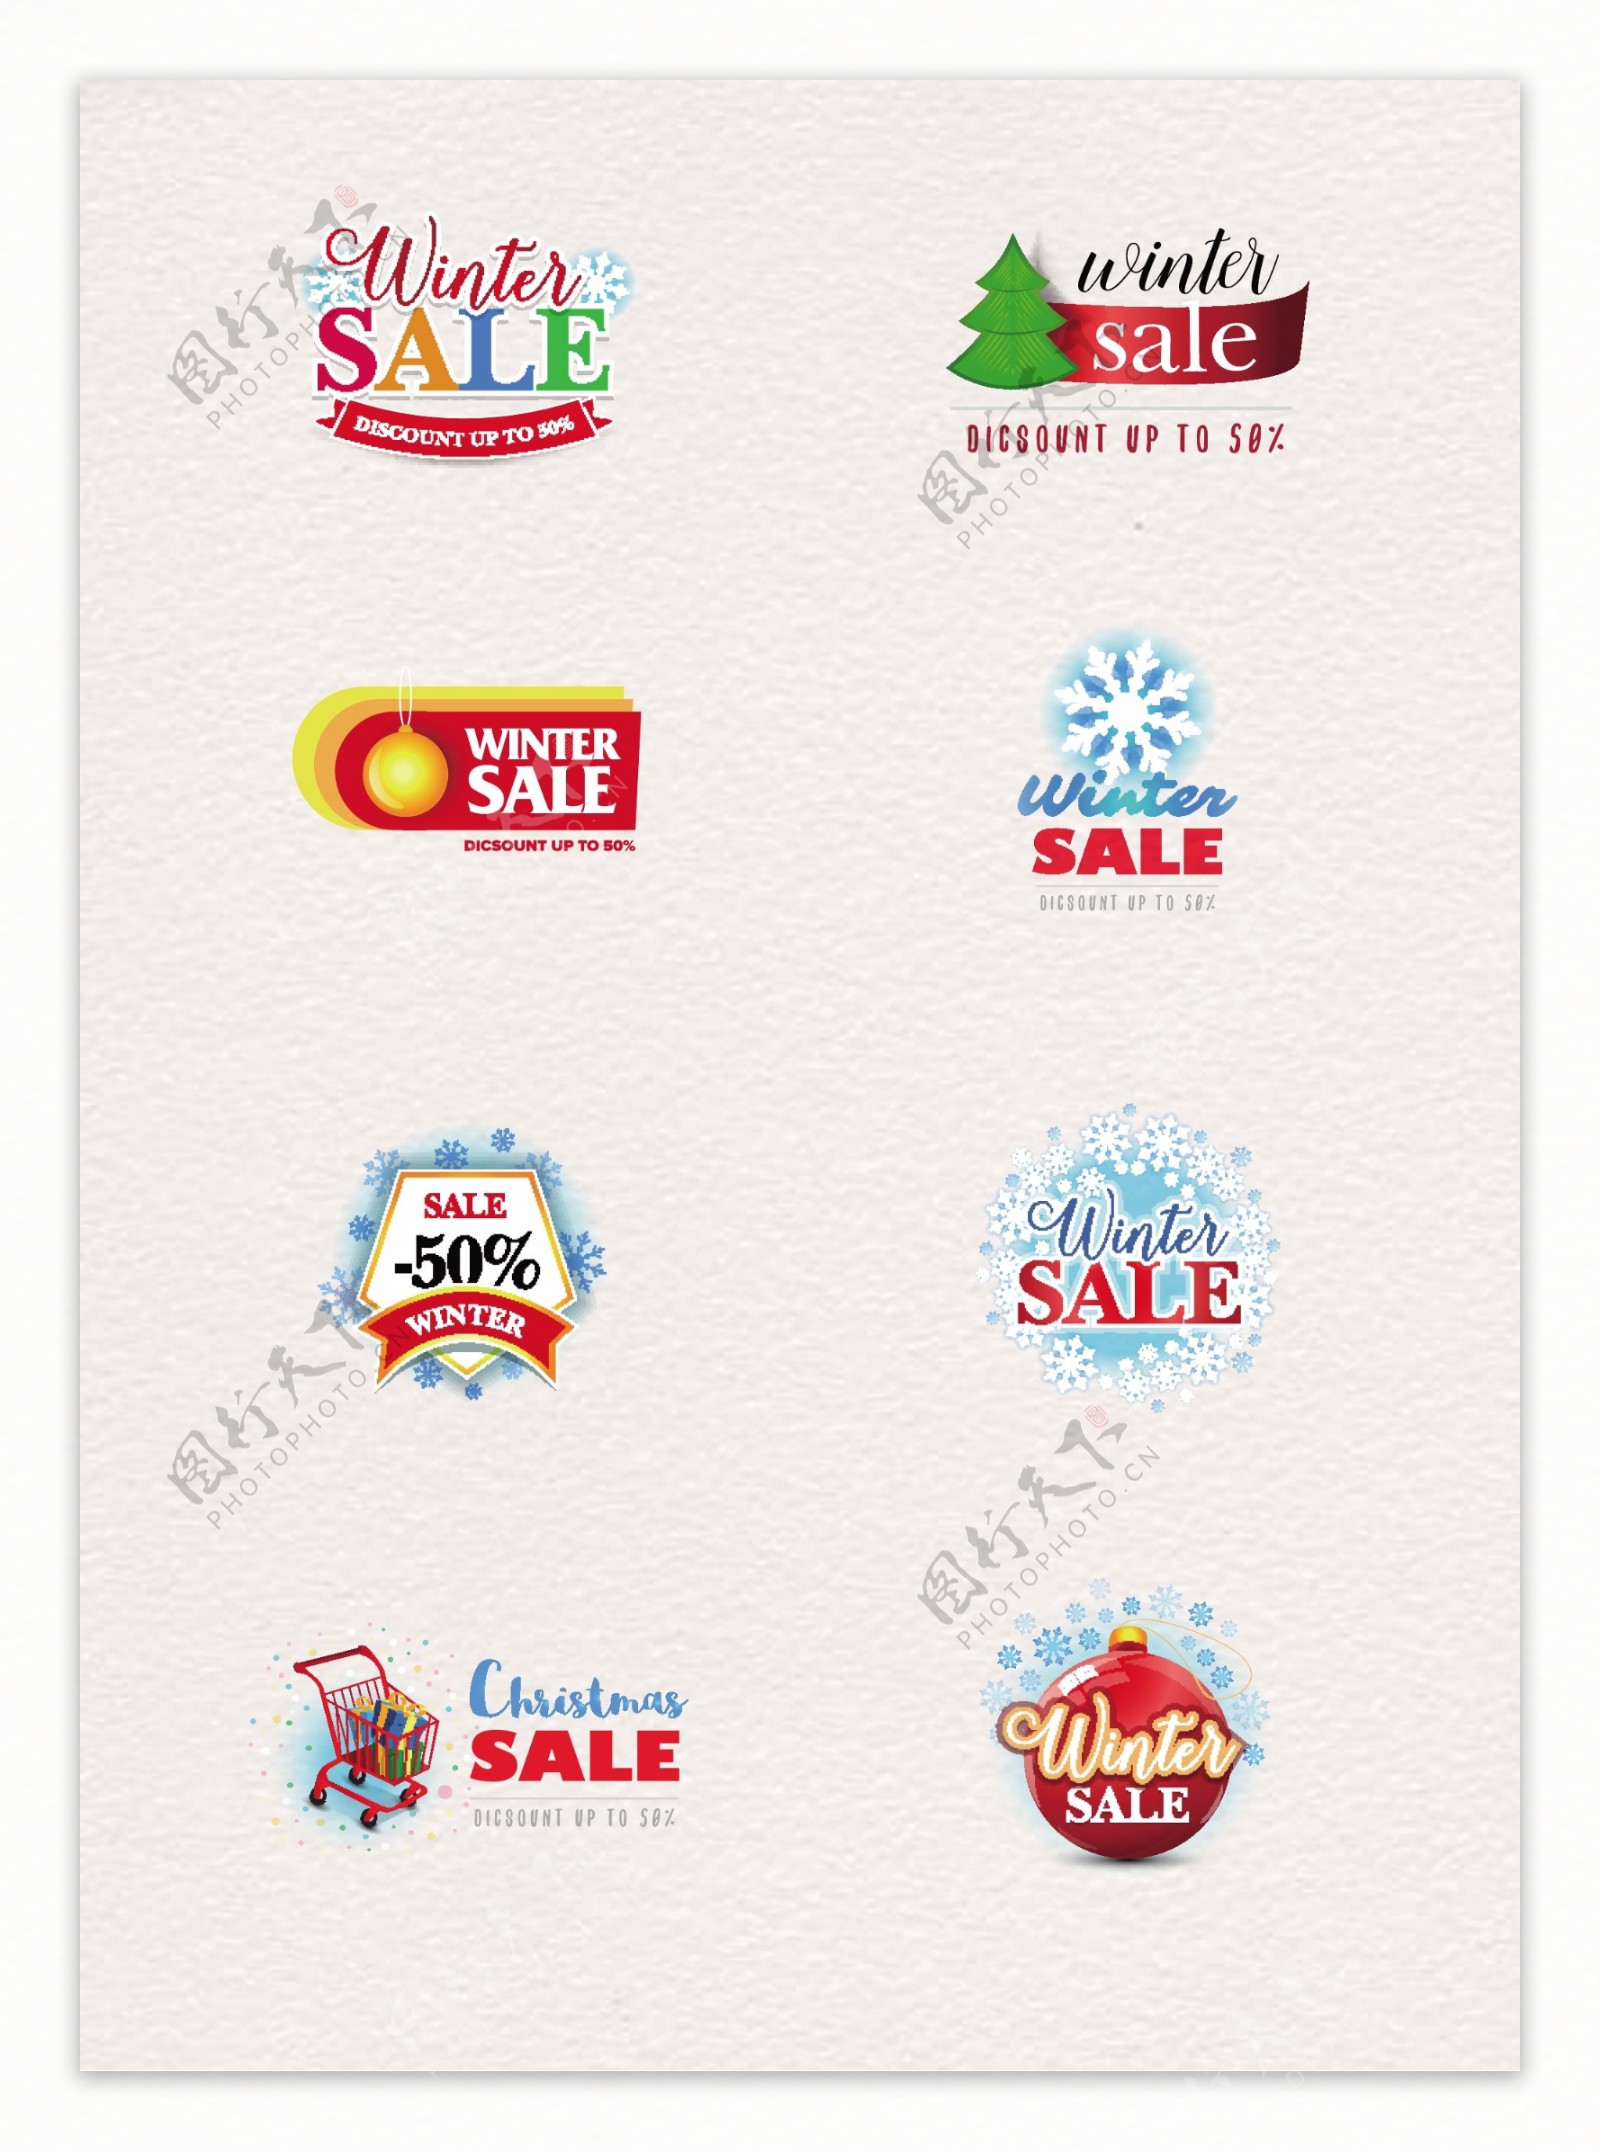 8组彩色圣诞节节日促销标签设计